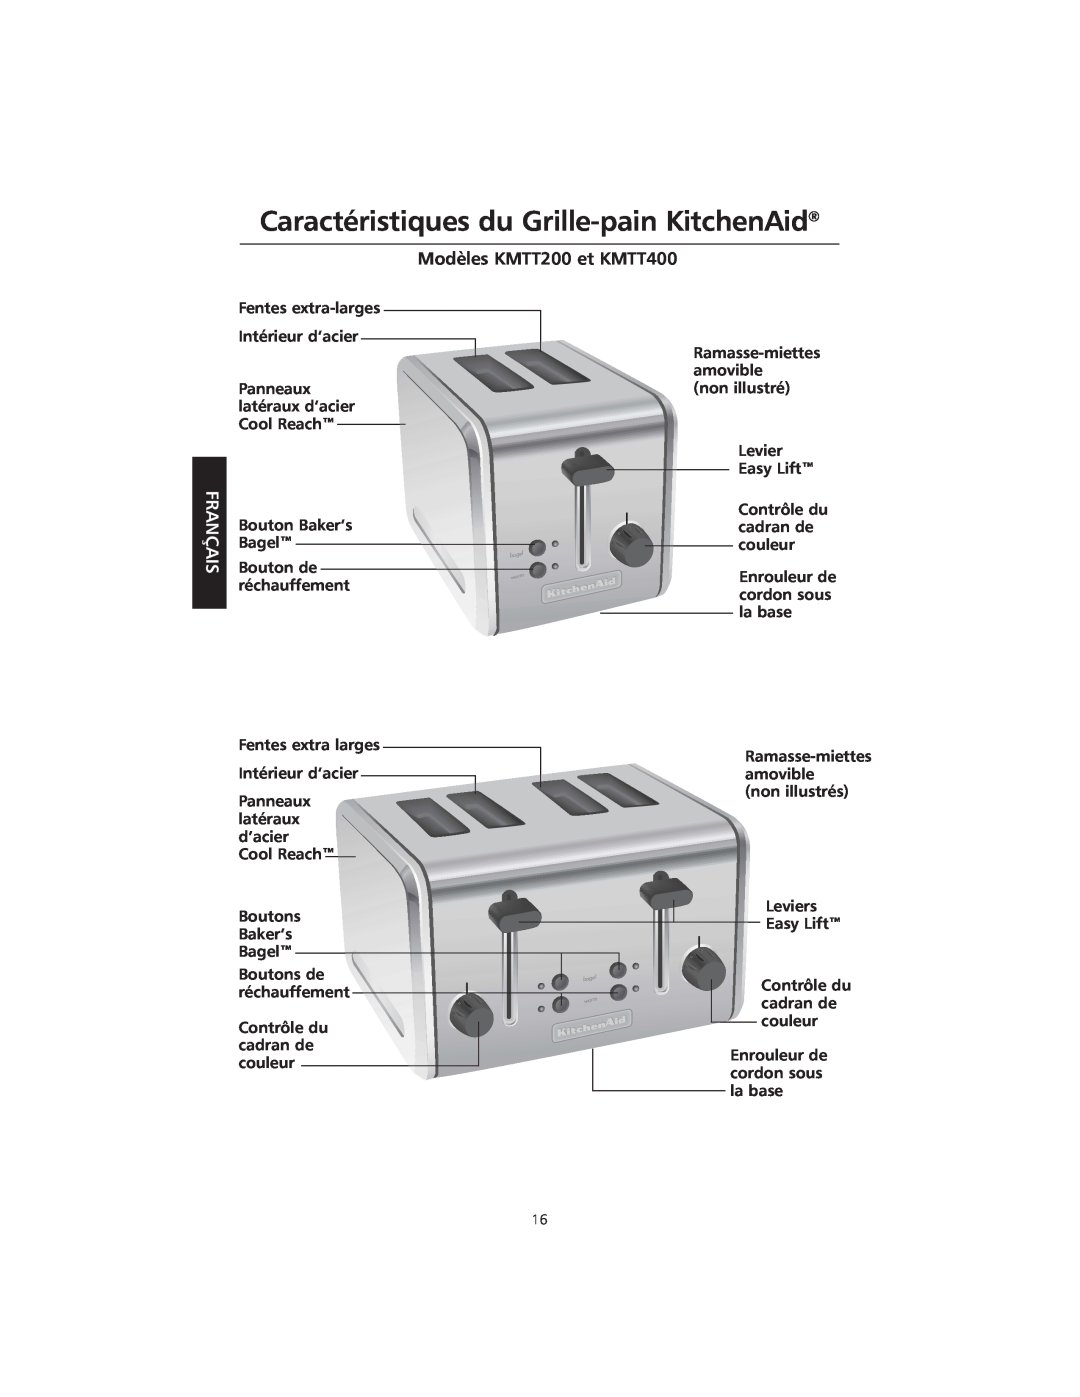 KitchenAid manual Caractéristiques du Grille-pain KitchenAid, Modèles KMTT200 et KMTT400, Français 